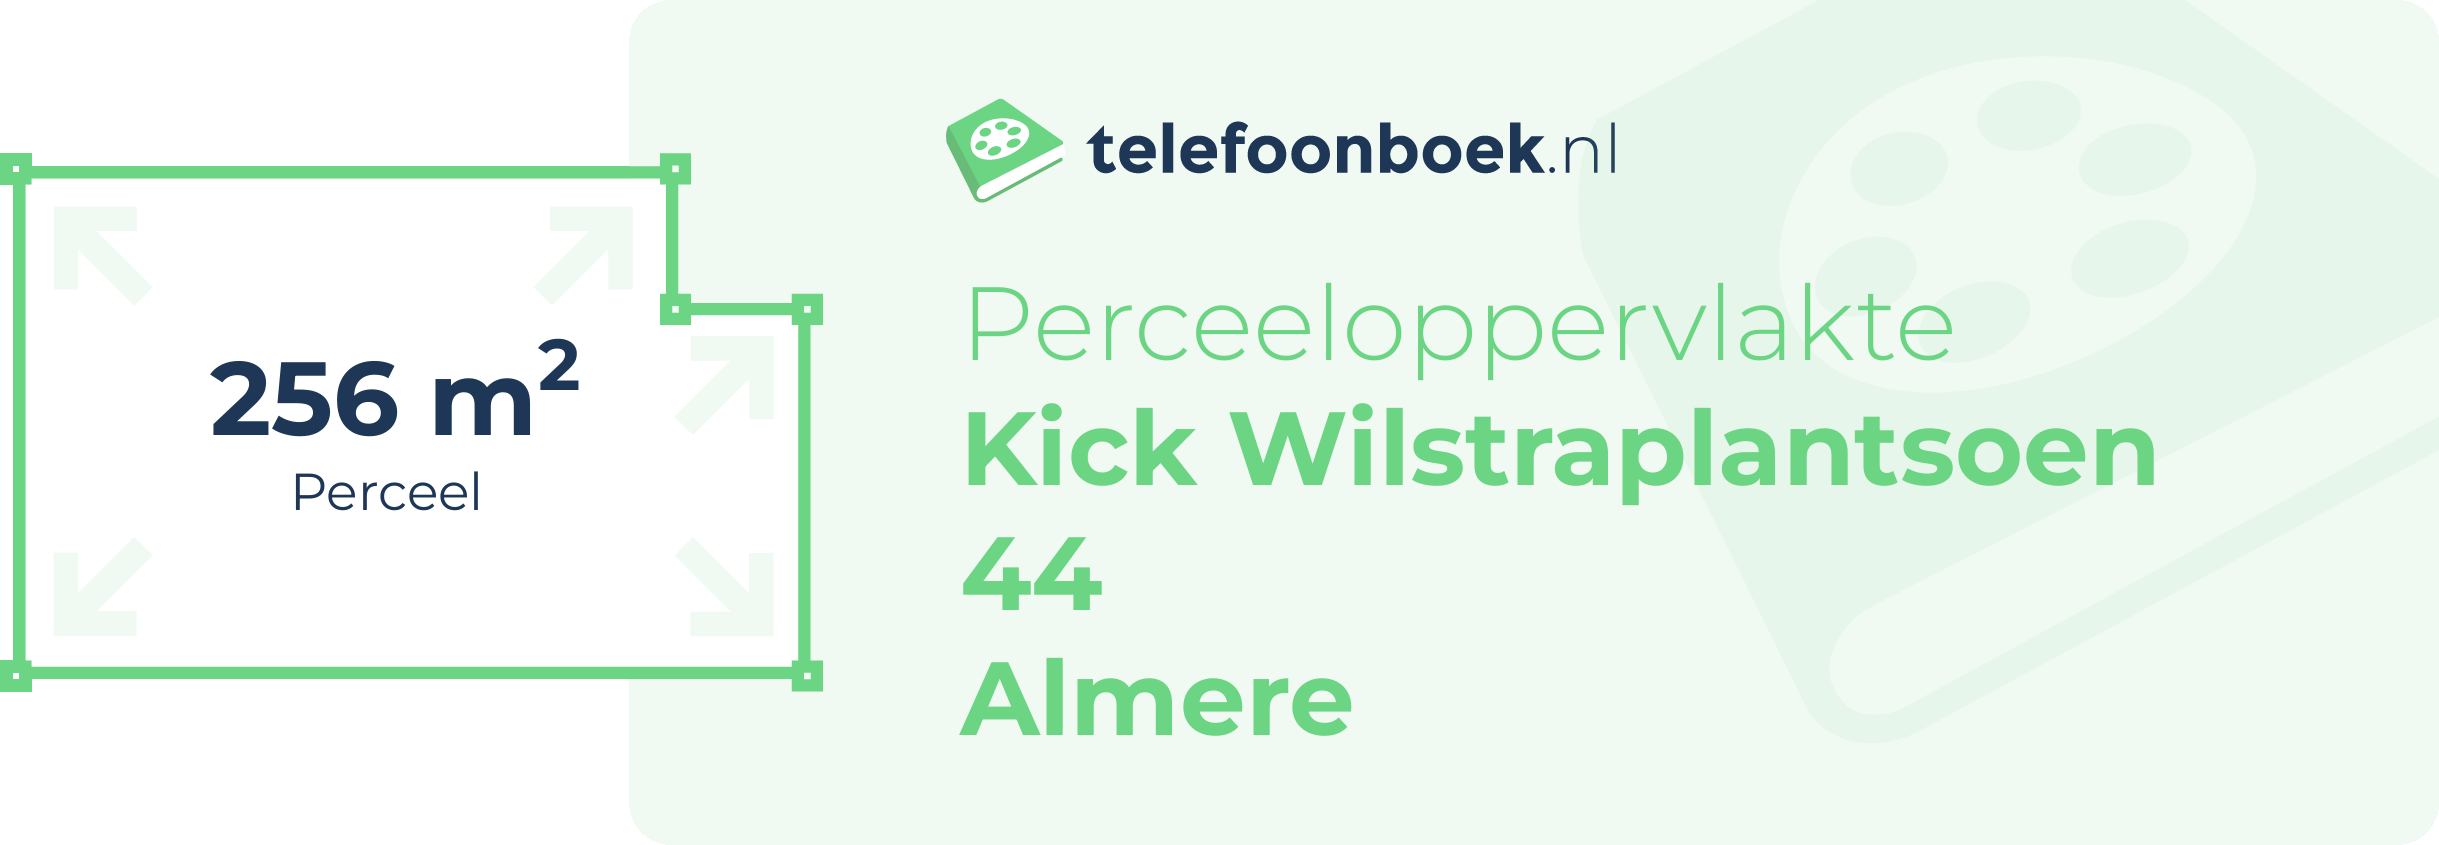 Perceeloppervlakte Kick Wilstraplantsoen 44 Almere